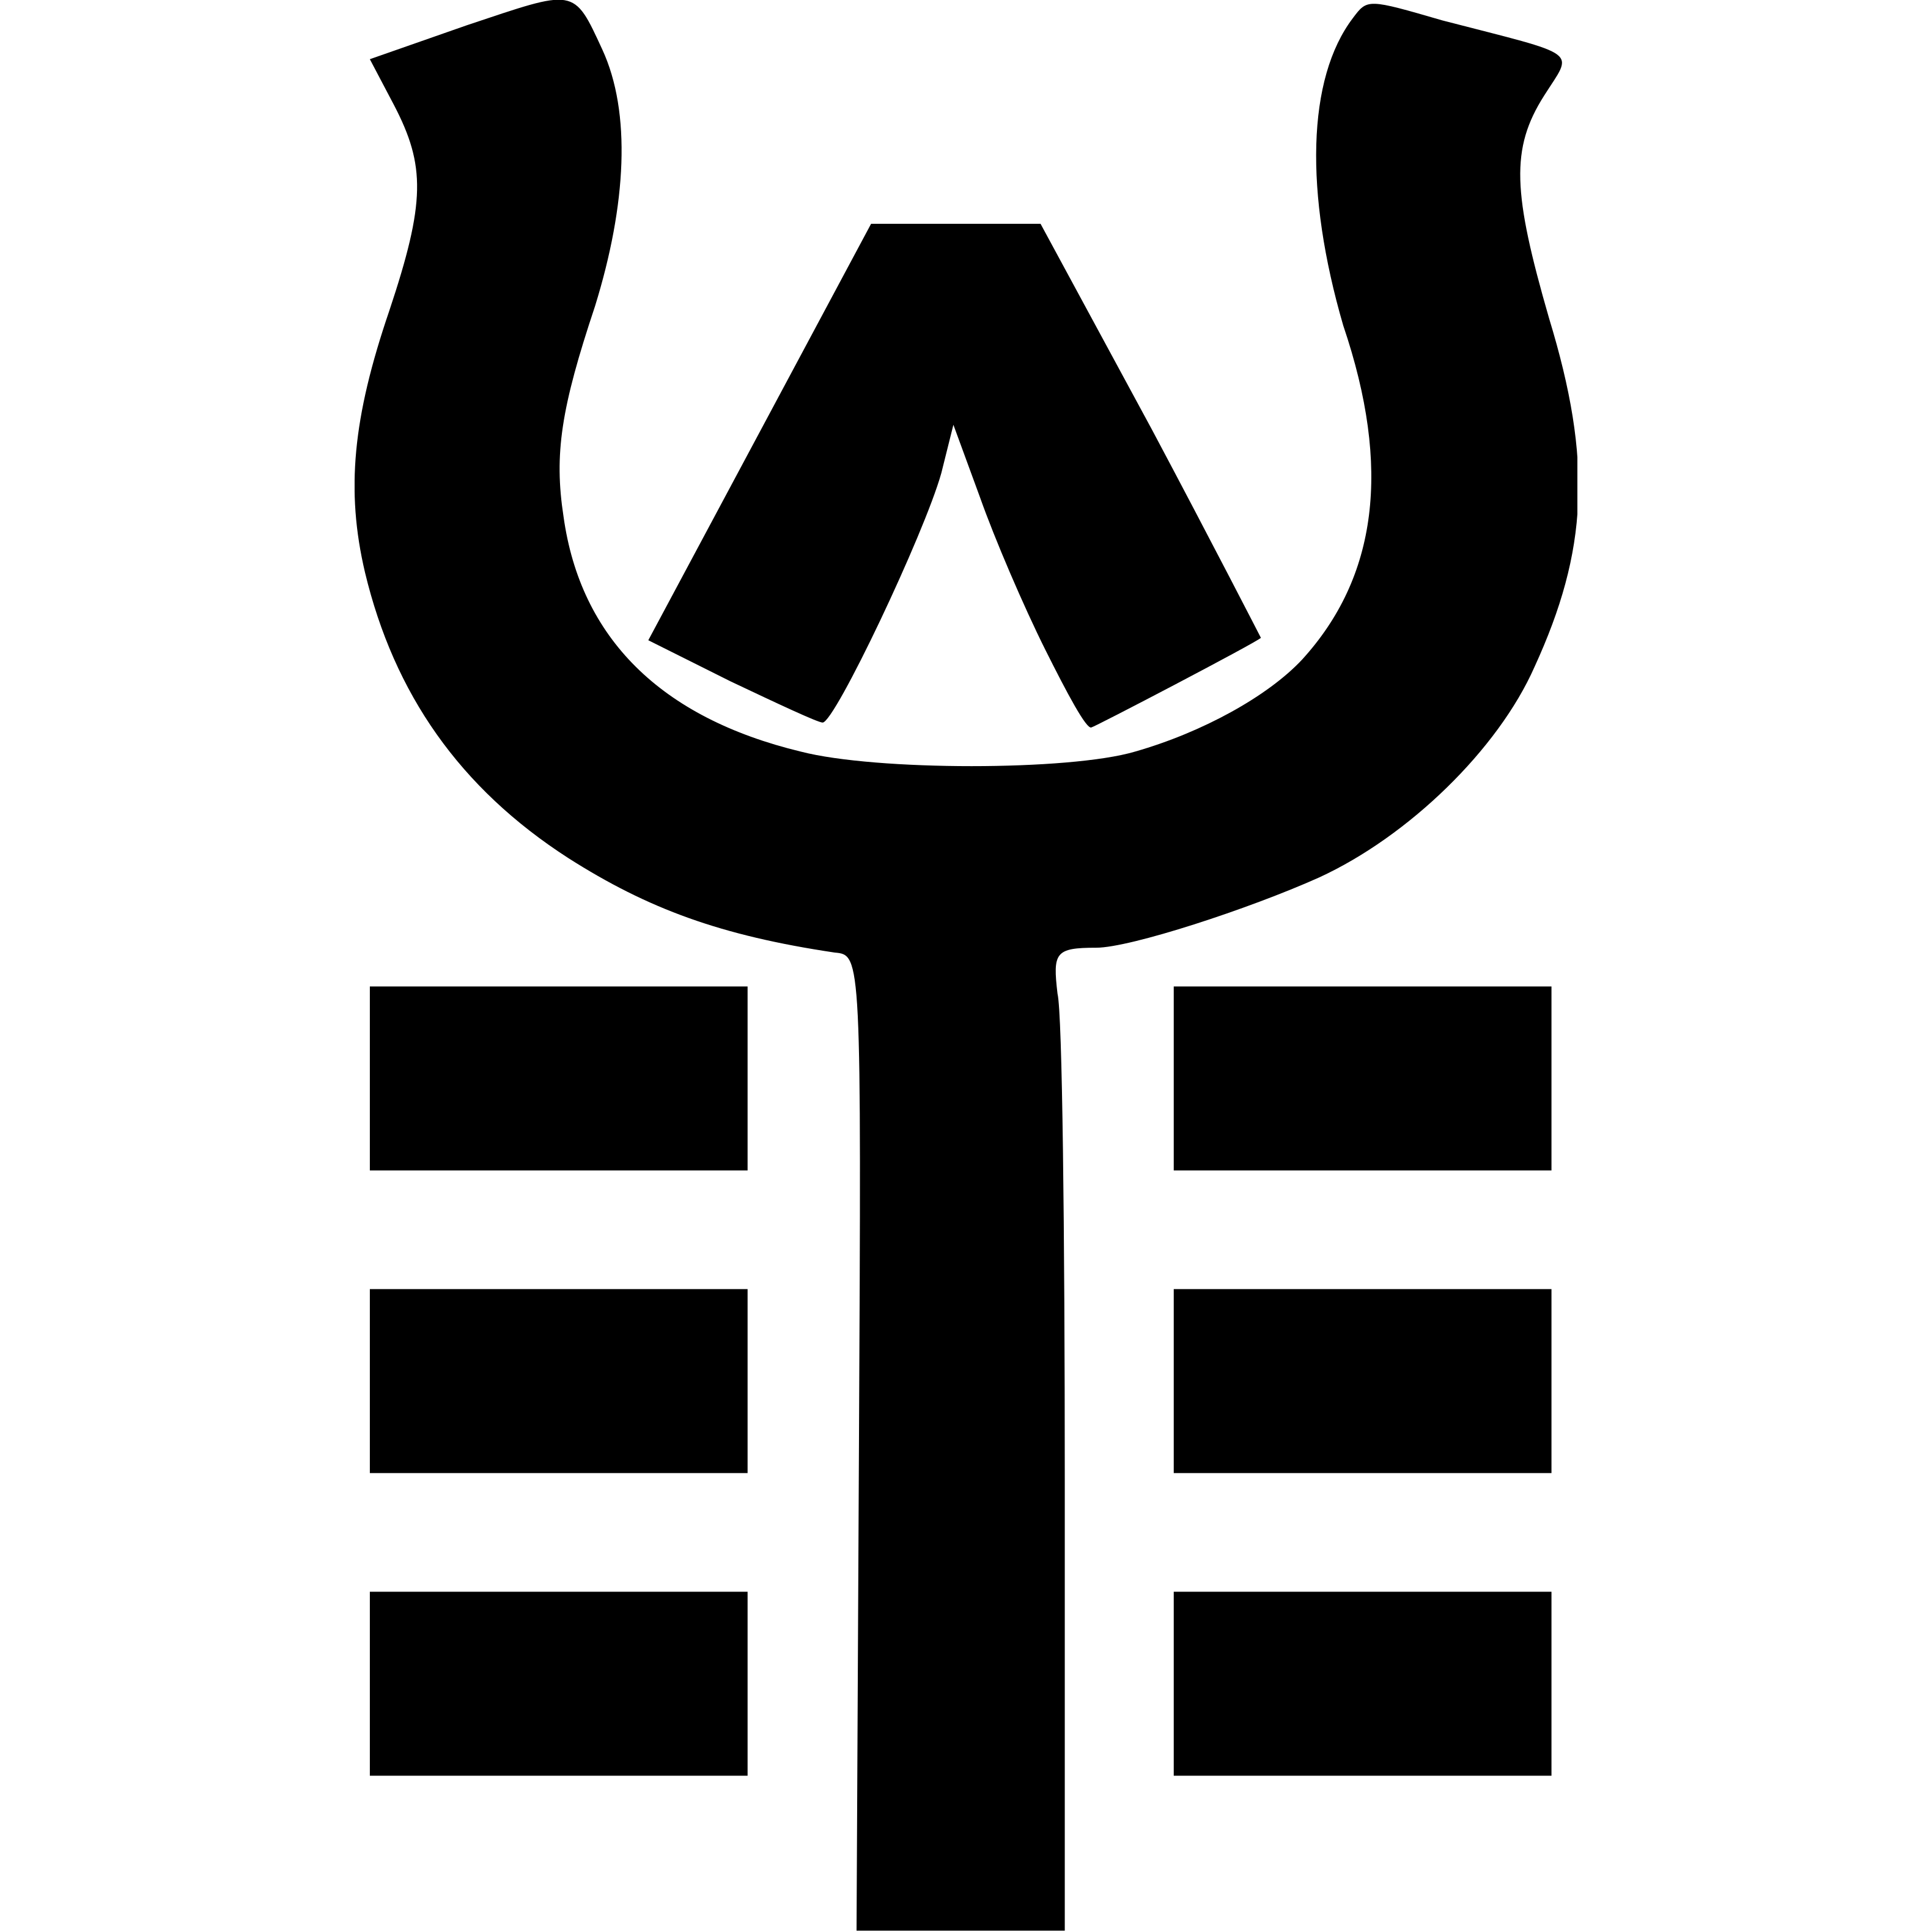 saffron.finance logo in png format